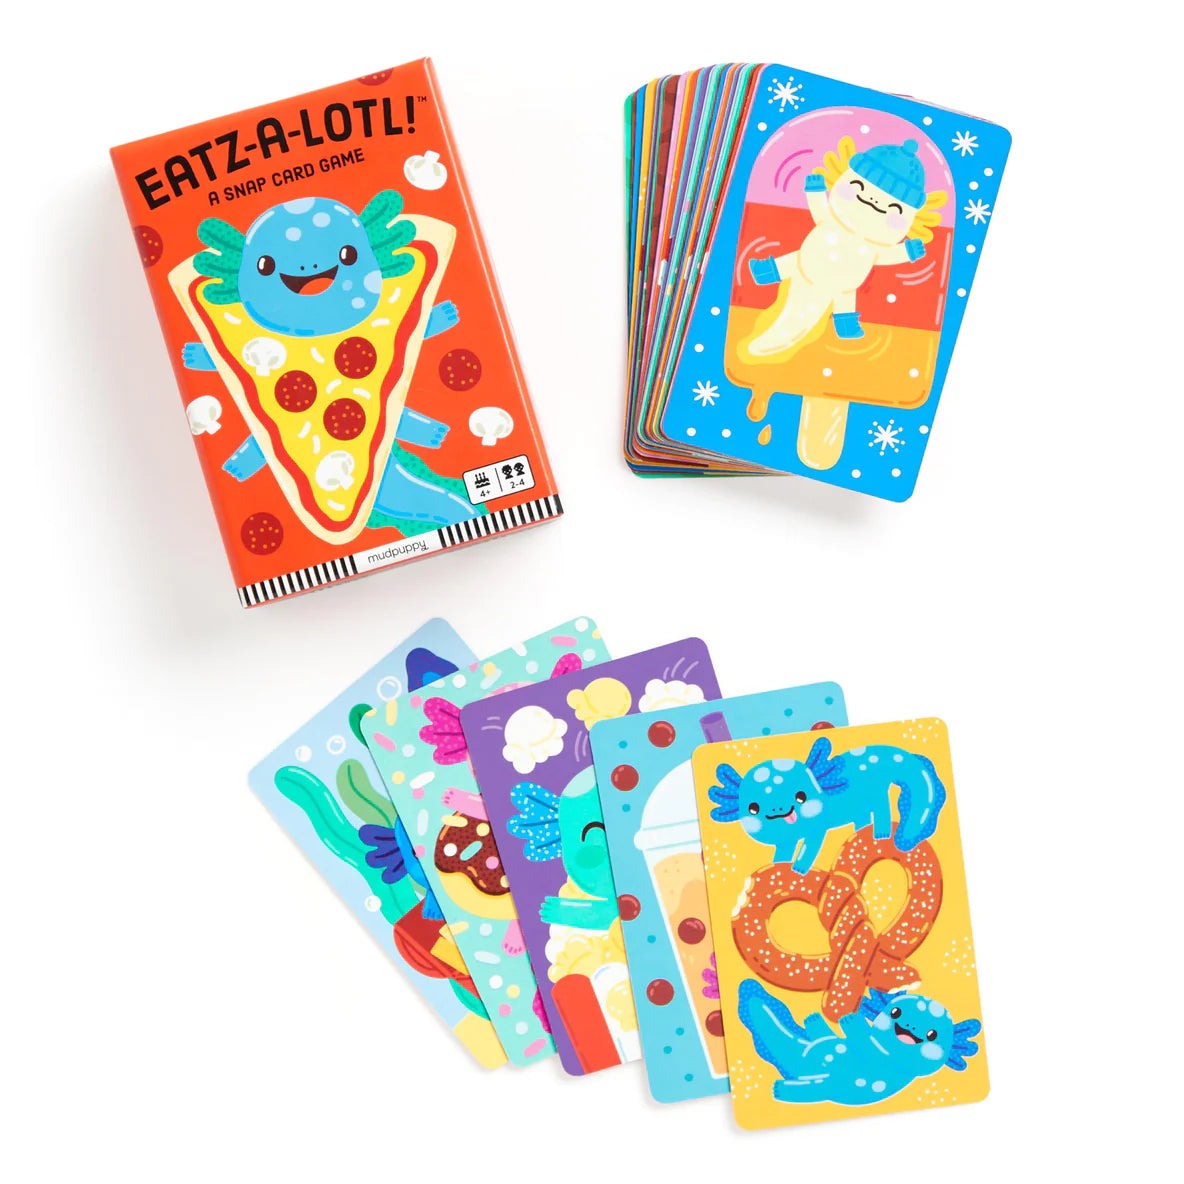 Eatz-a-lotl! Card Game Cover